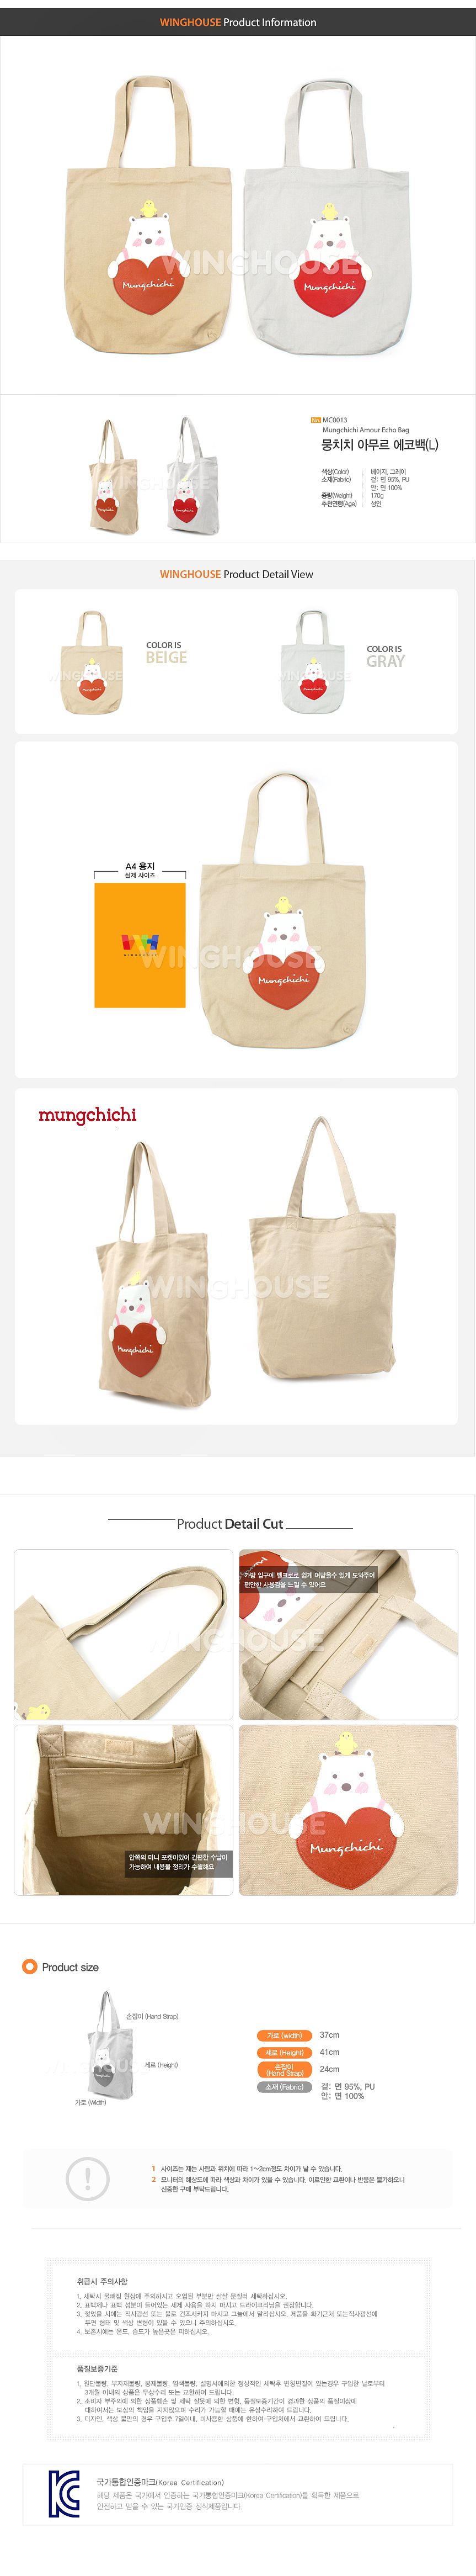 ★特價★韓國品牌Mungchichi-設計款提袋【MC0013】-L